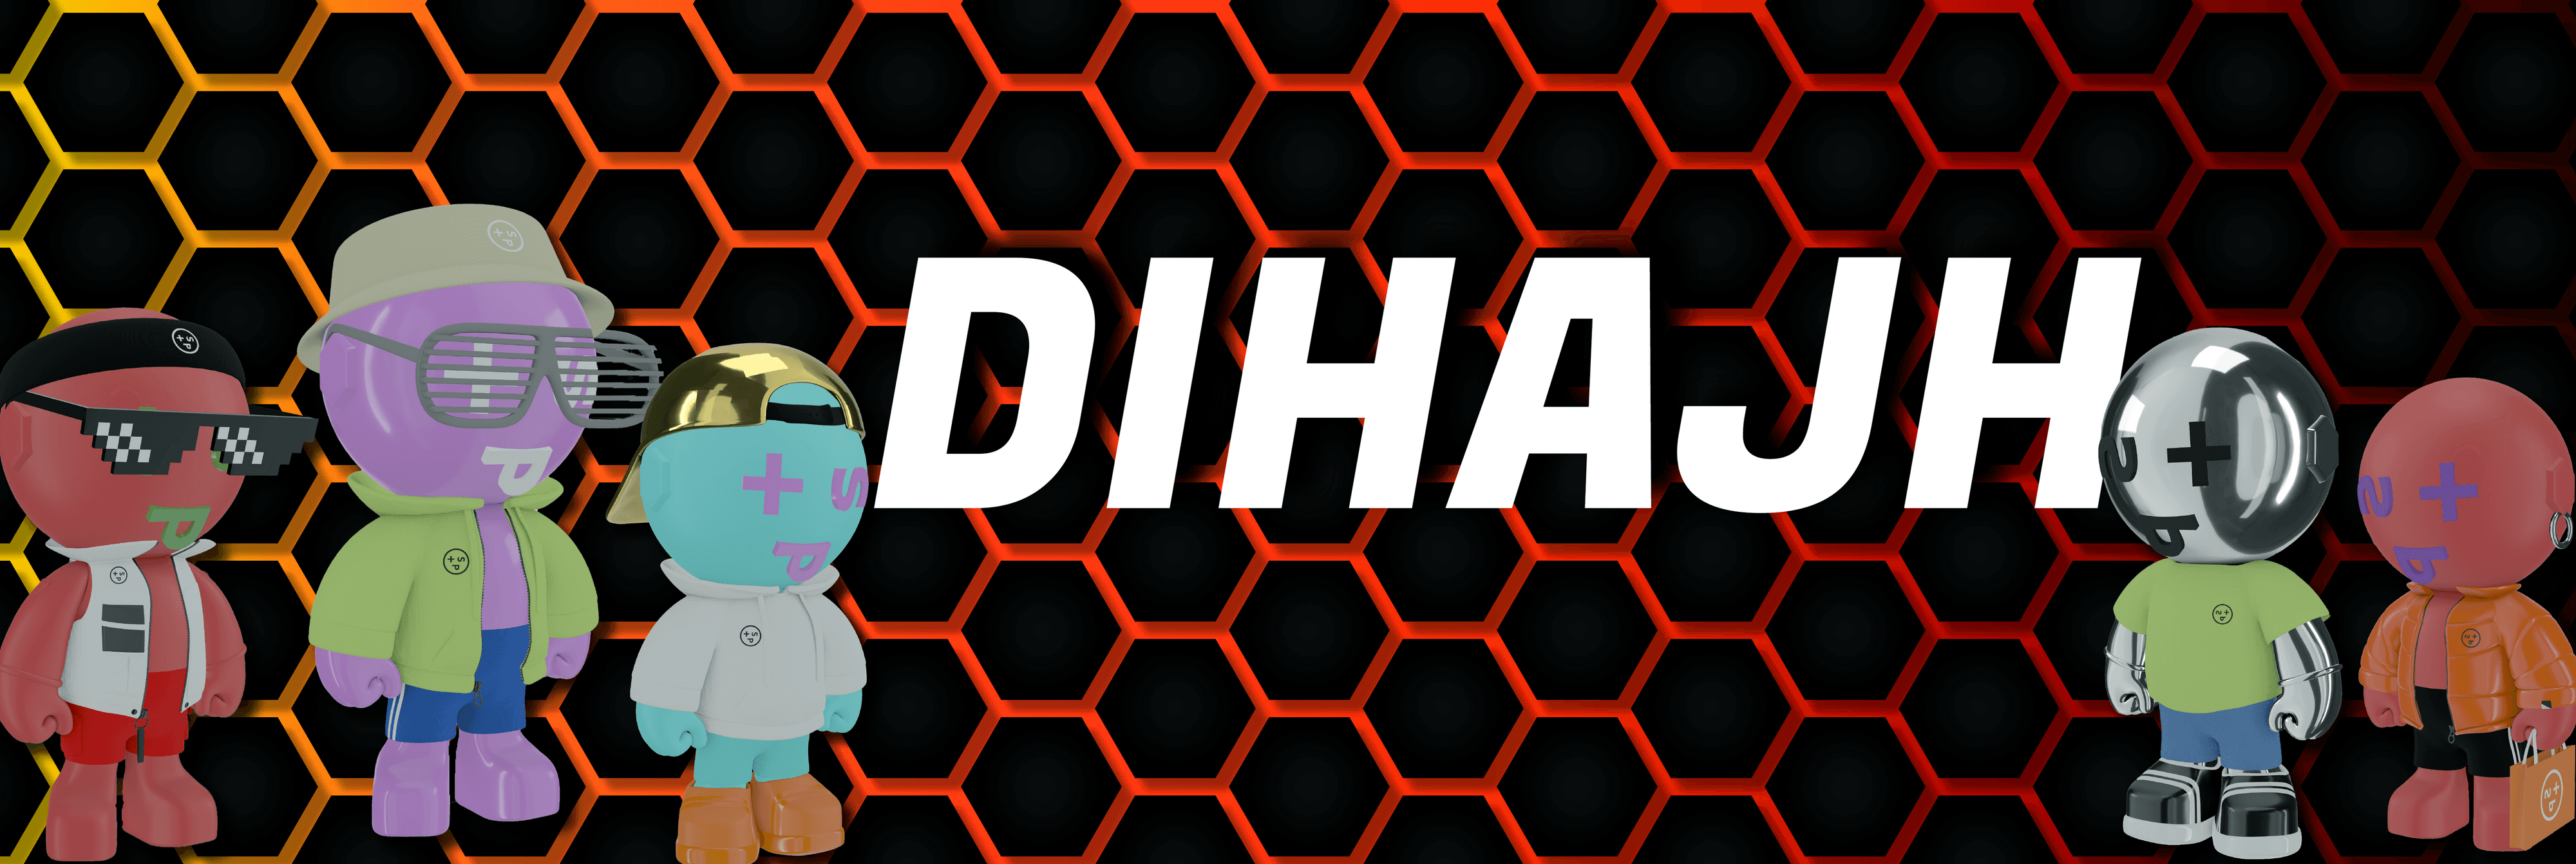 Dihajh banner